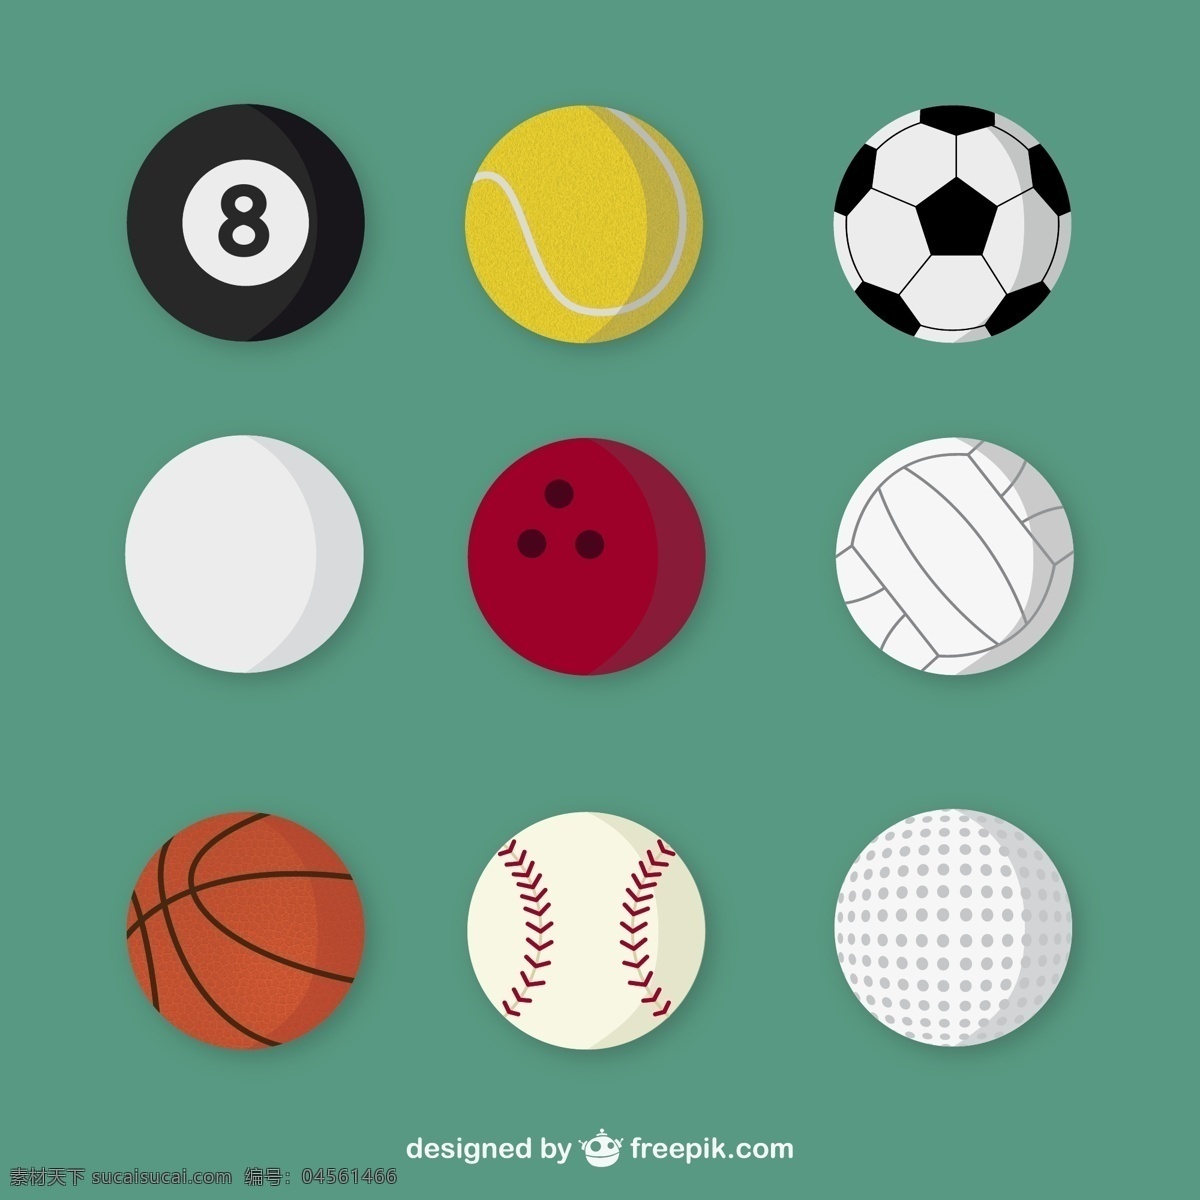 精美 球 具 矢量 台球 棒球 足球 排球 保龄球 网球 高尔夫球 体育用品 球具 矢量图 青色 天蓝色